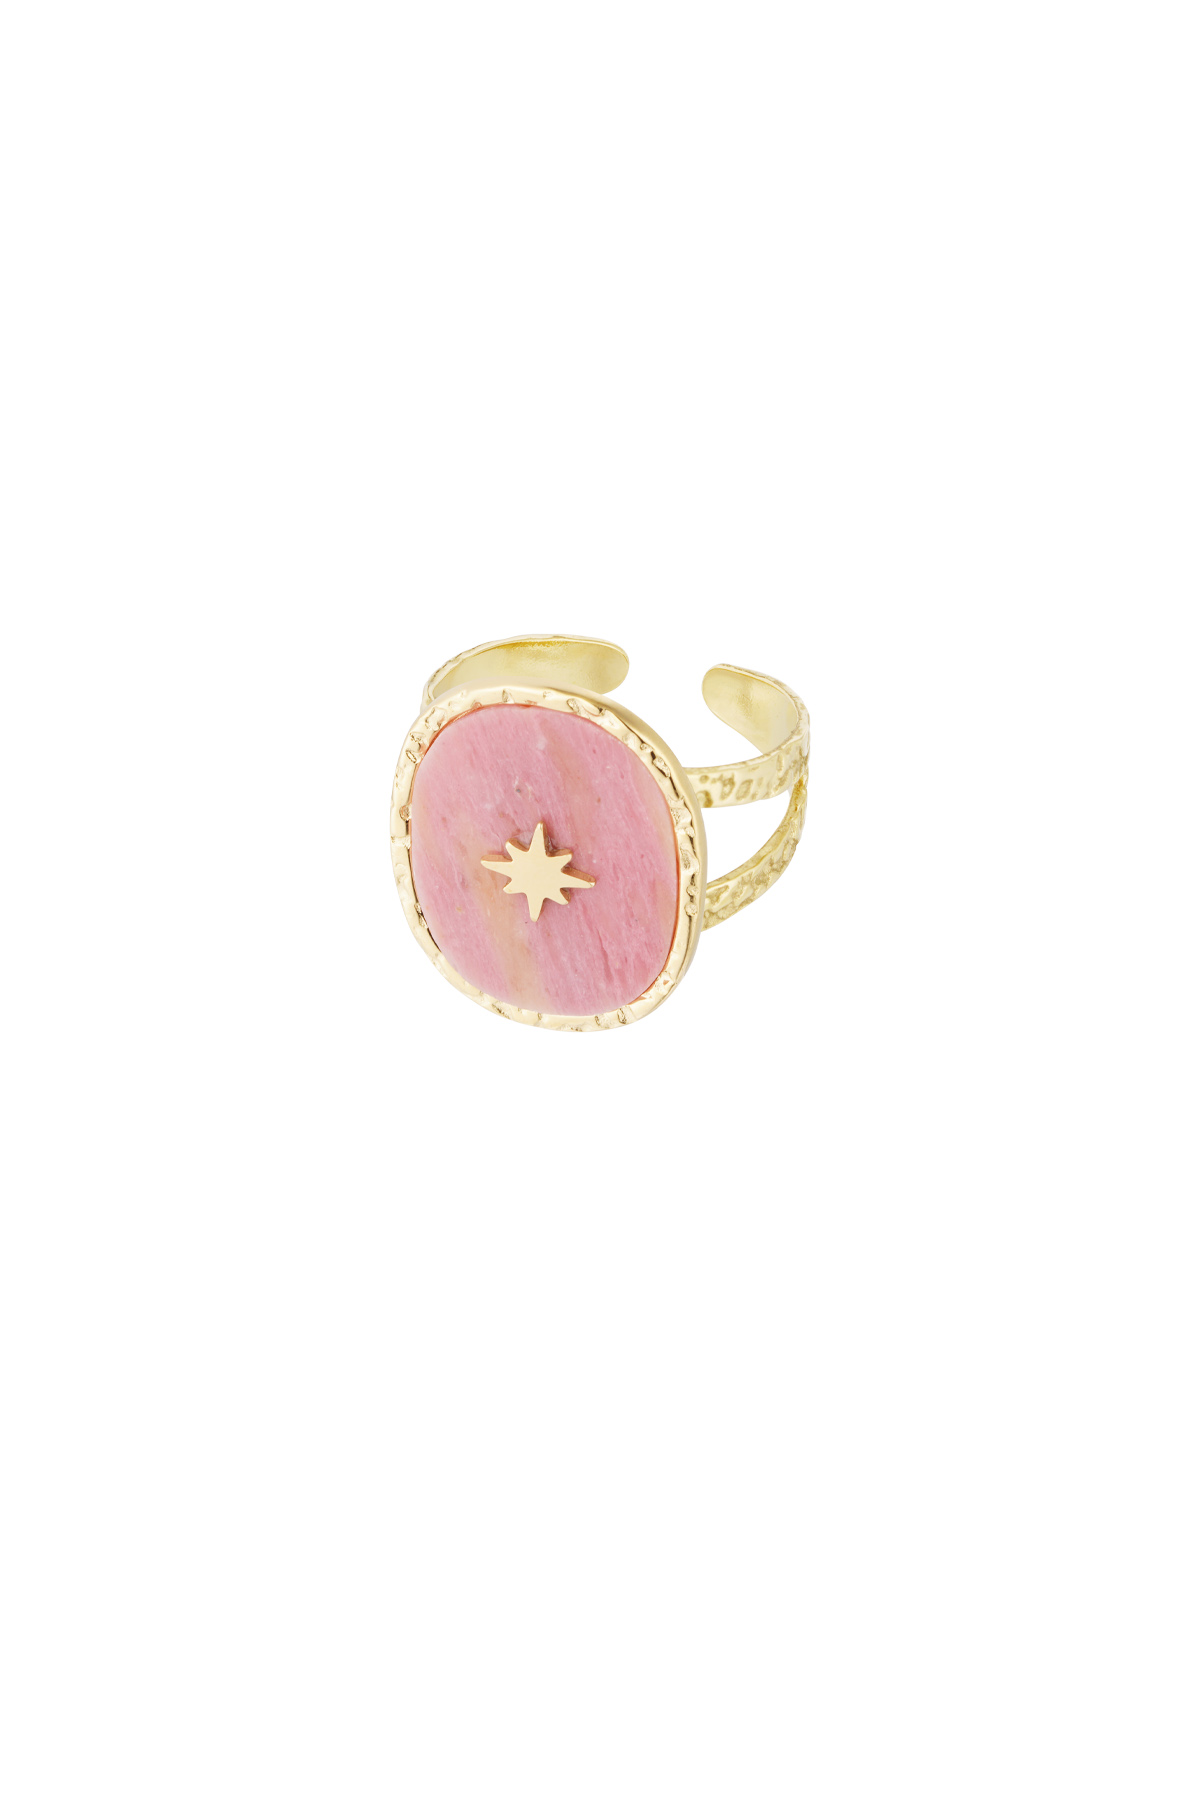 Ring steen met ster - goud/roze